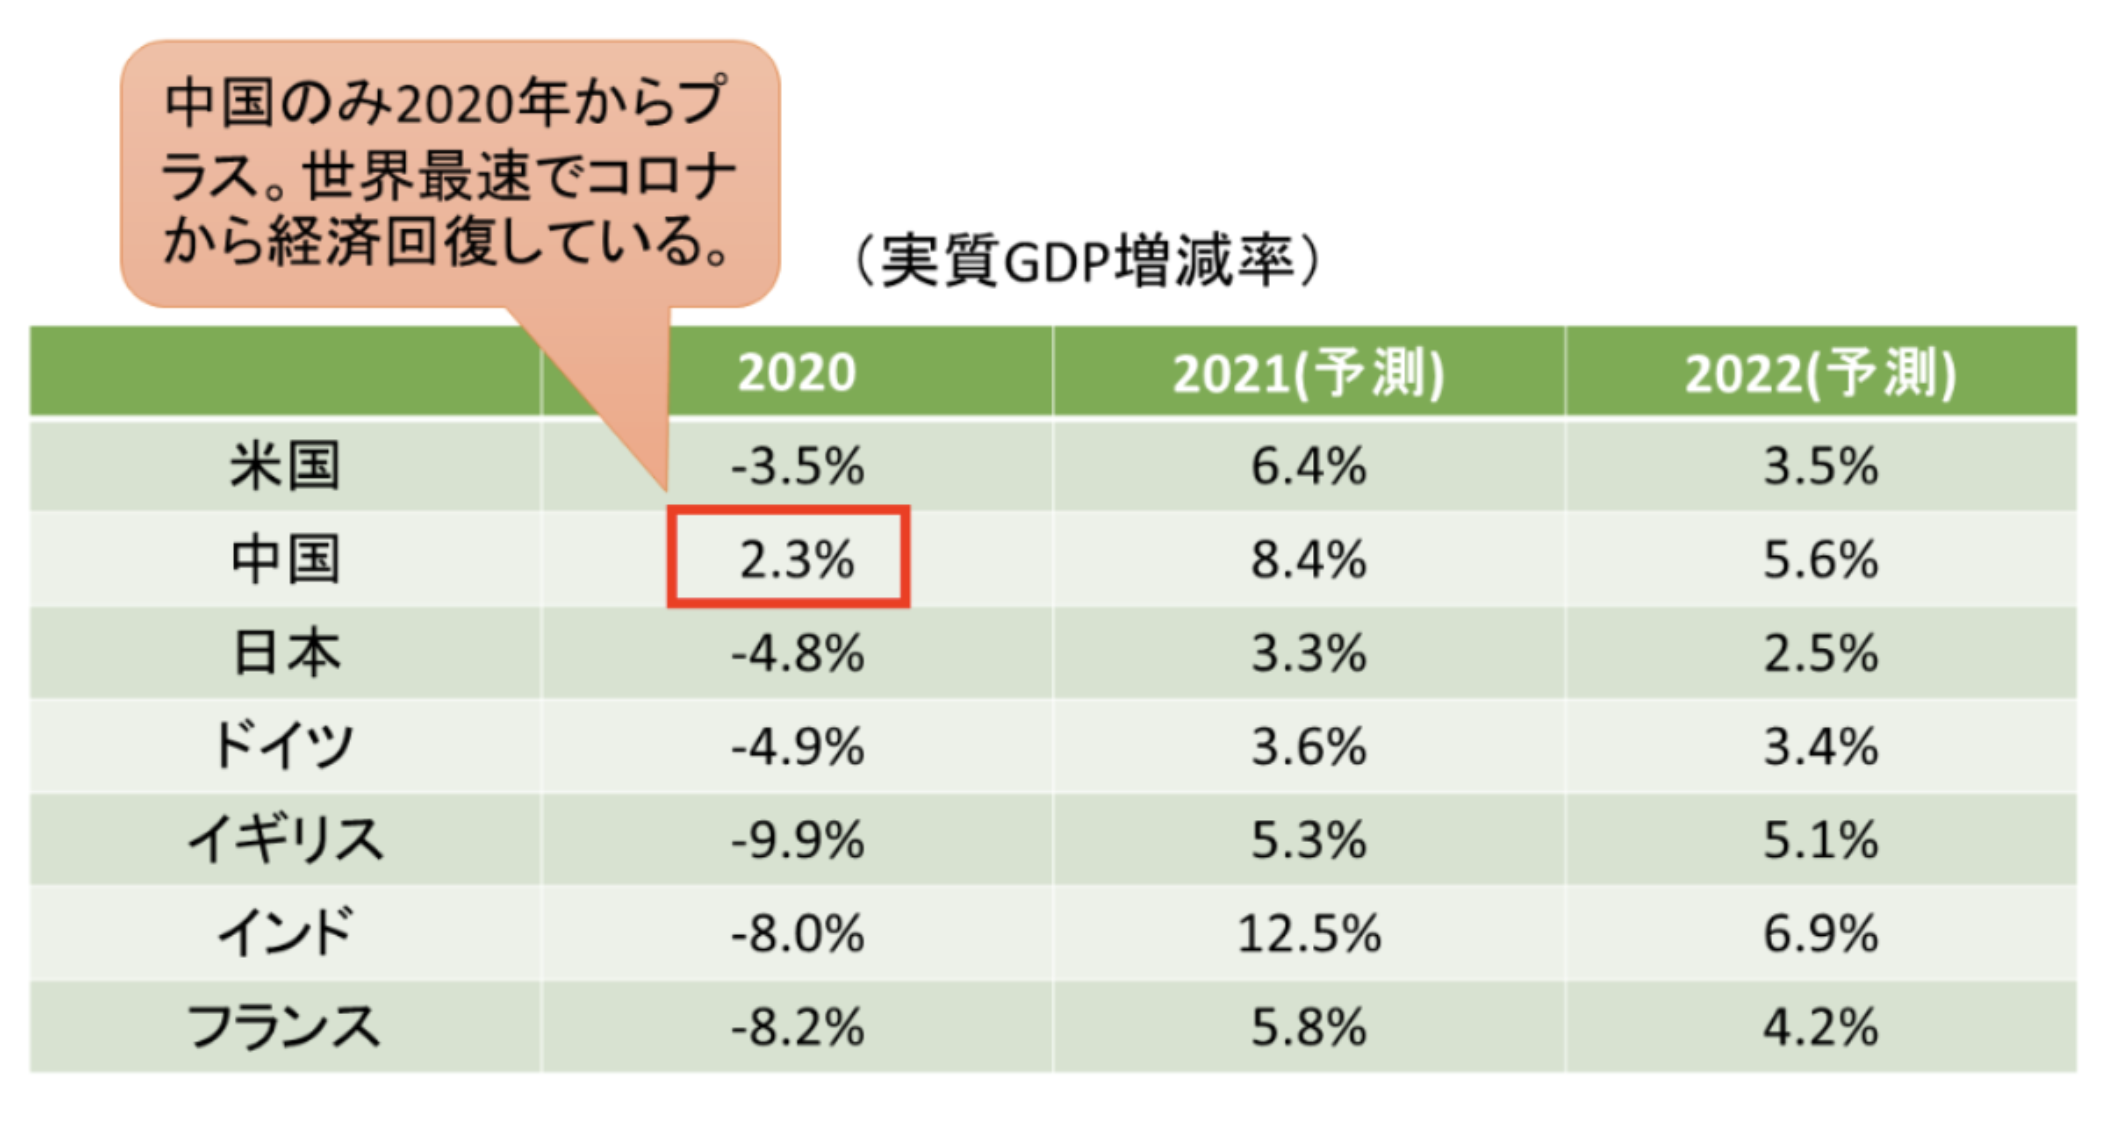 中国を含む主要国の経済成長率の推移